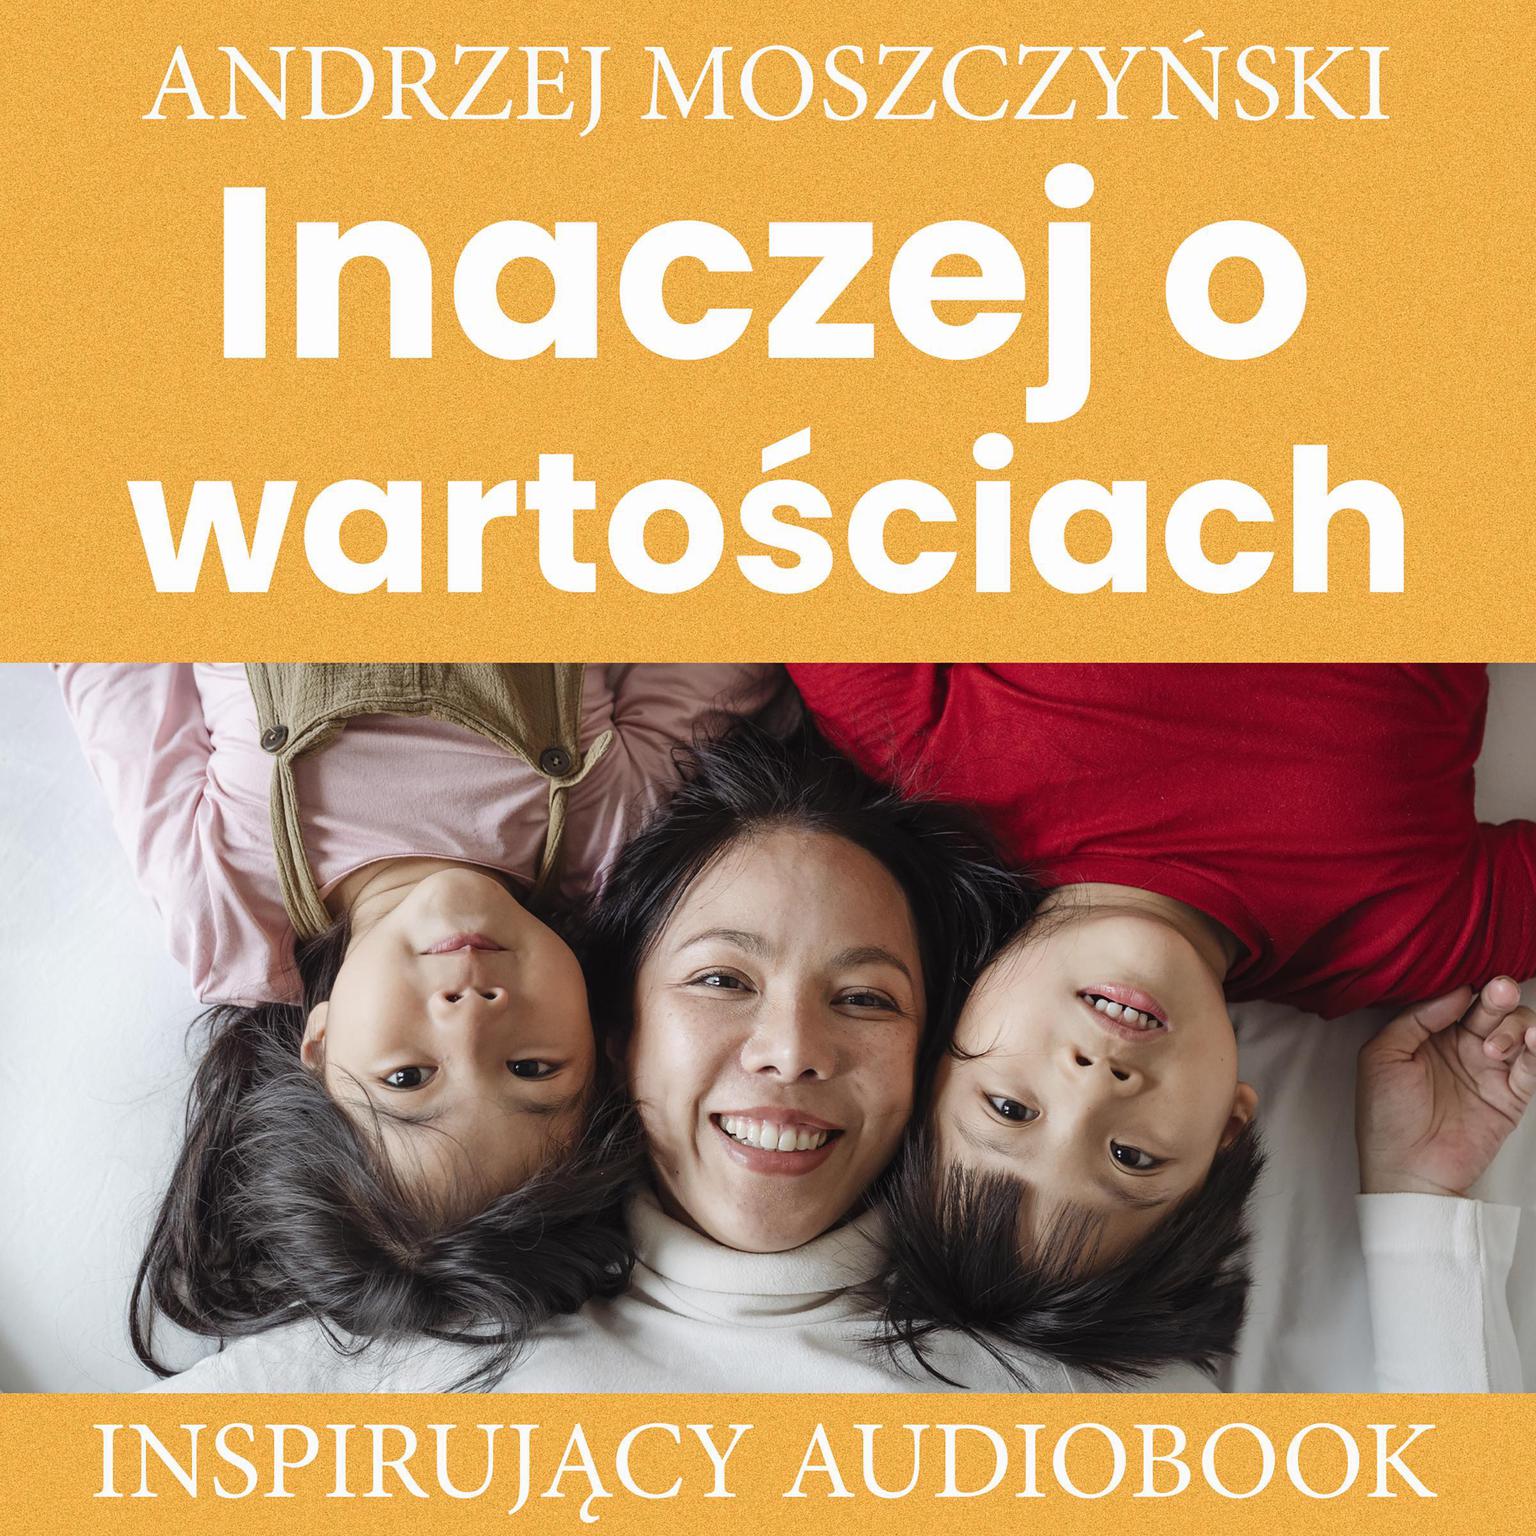 Inaczej o wartościach Audiobook, by Andrzej Moszczyński